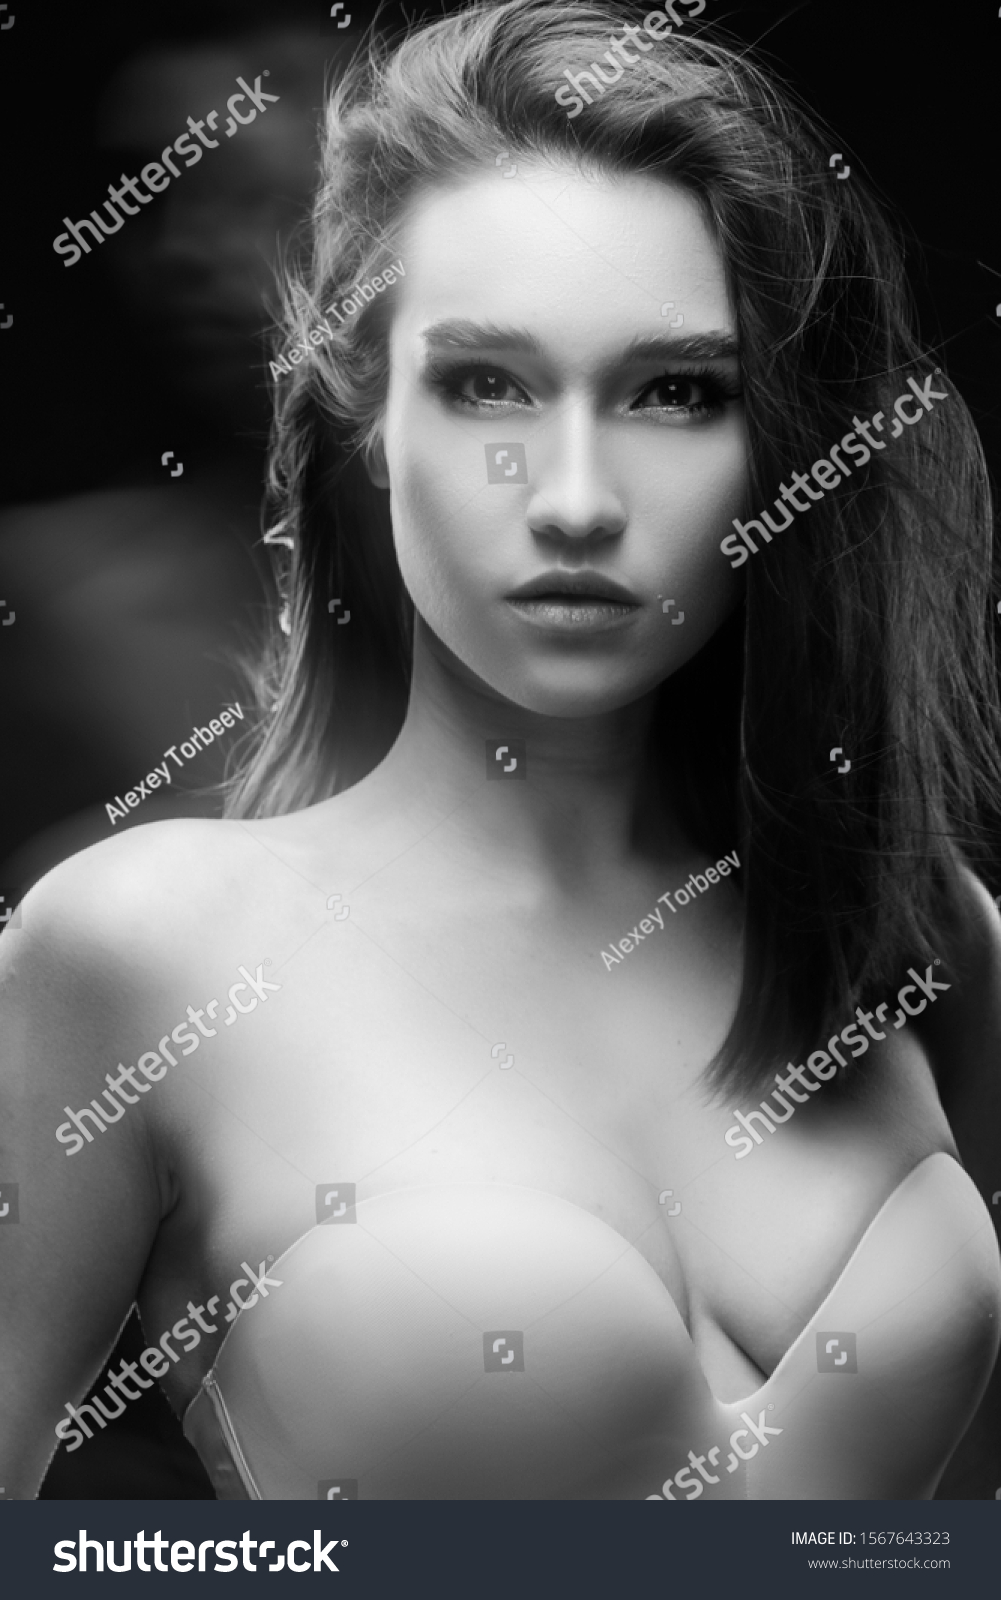 Mix race women nude asian white Beautiful Mixed Race Asian Girl Big Stock Photo Edit Now 1567643323